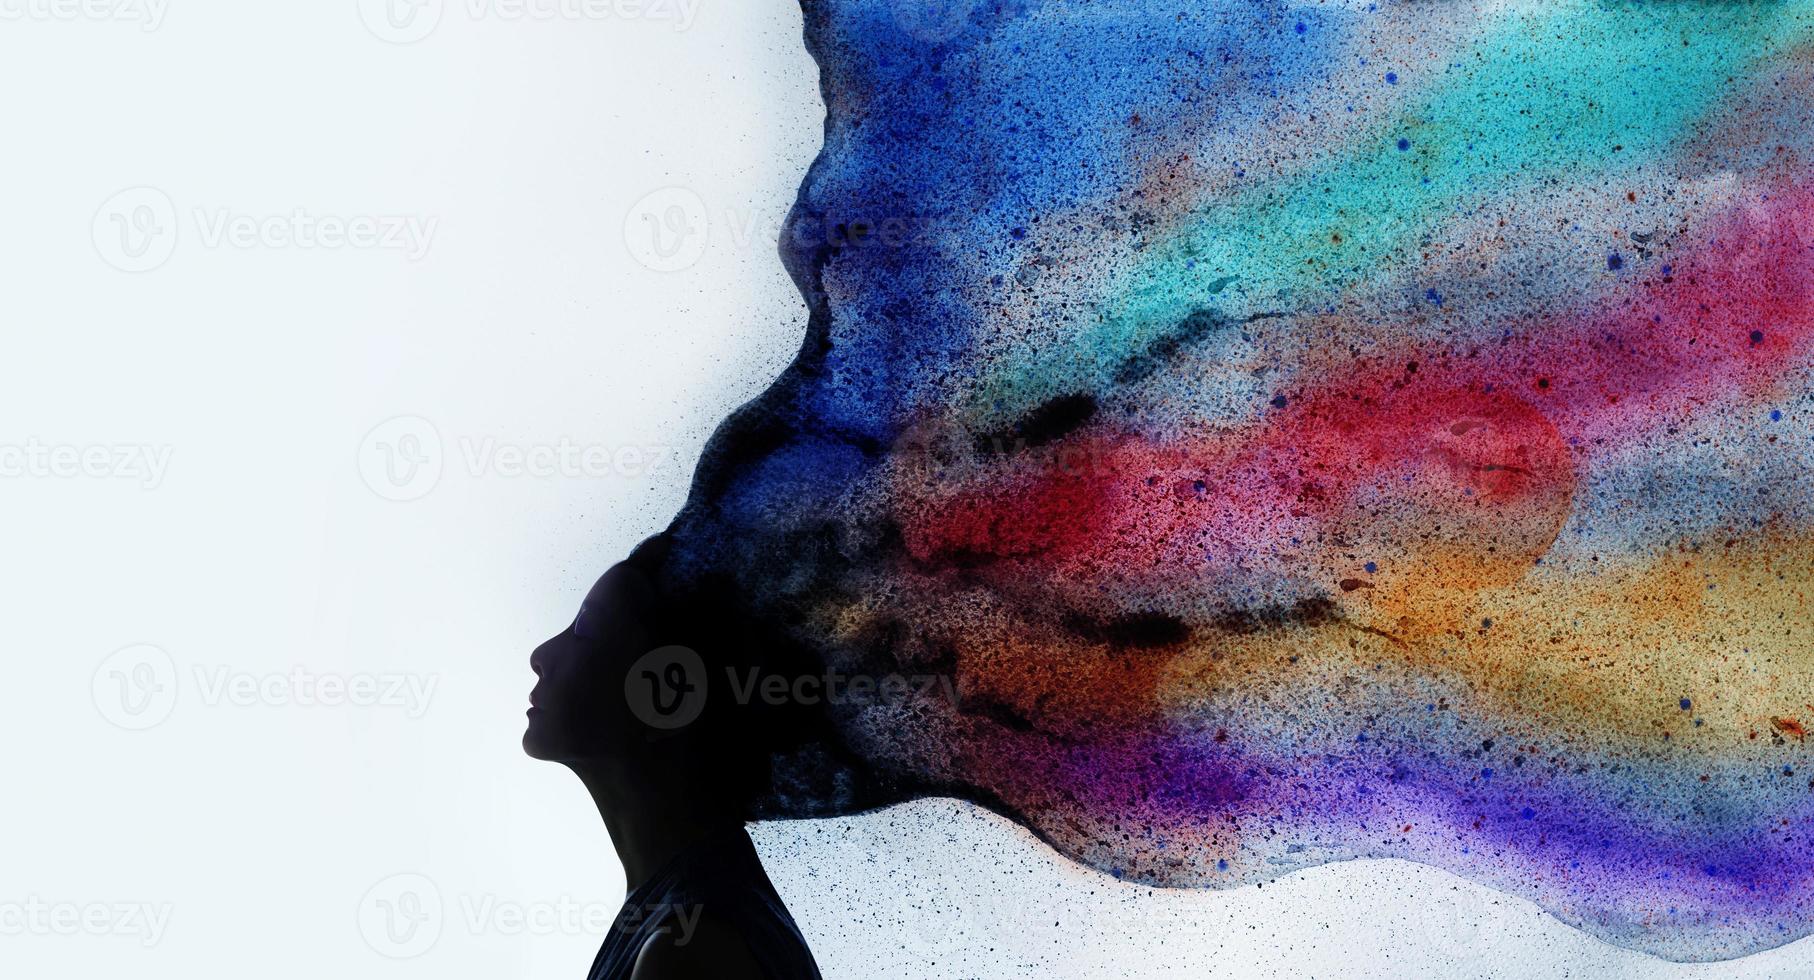 conceito de saúde mental, imaginação e criatividade. foto de silhueta de mulher combinada com aquarela colorida. mente positiva, liberdade, desfrutar e filosofia de vida